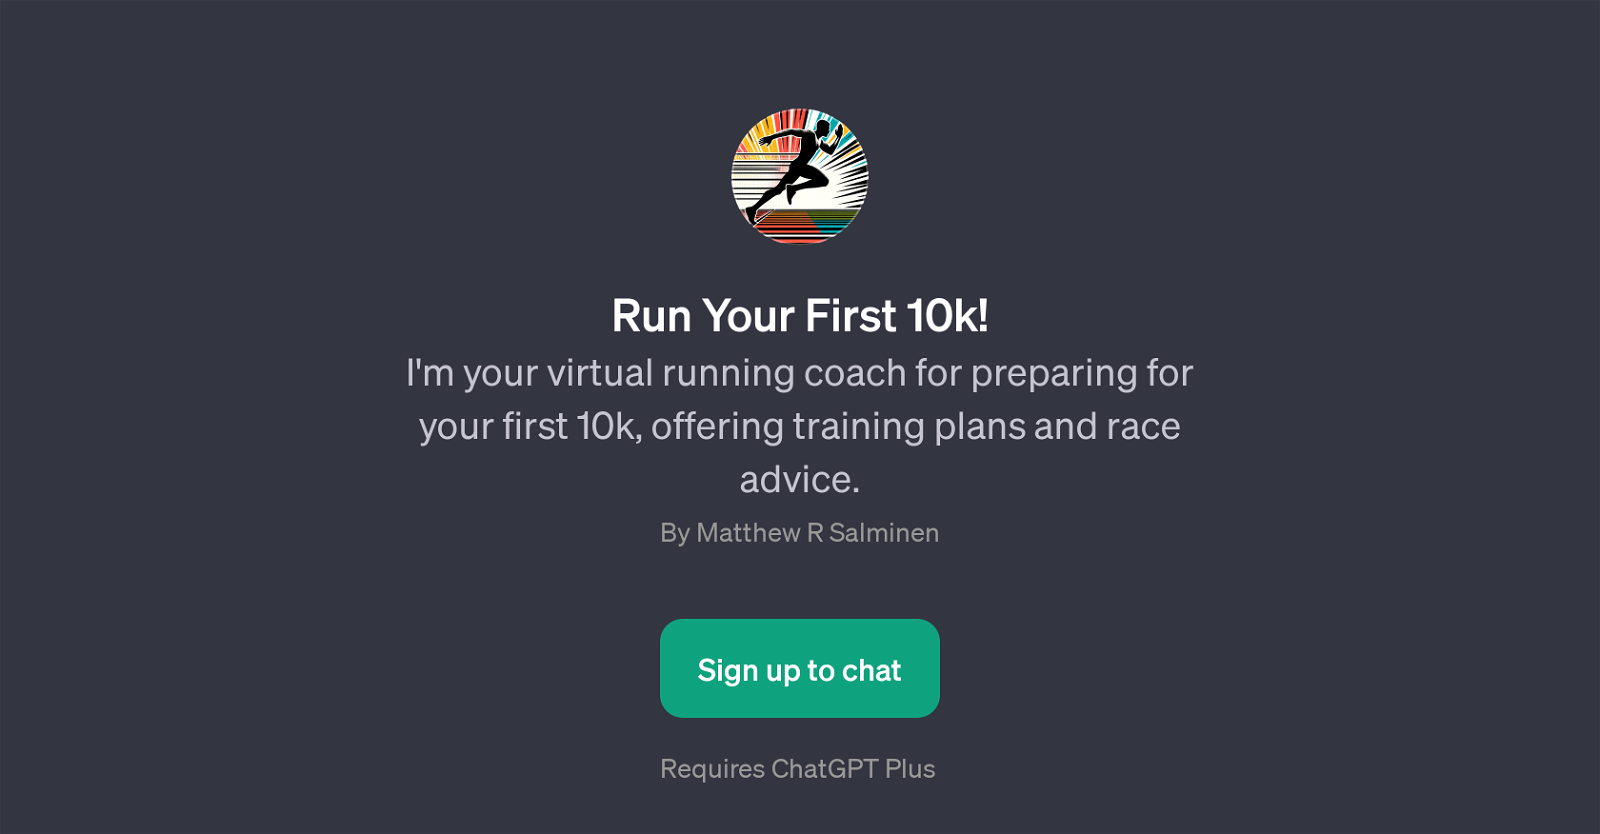 Run Your First 10k website